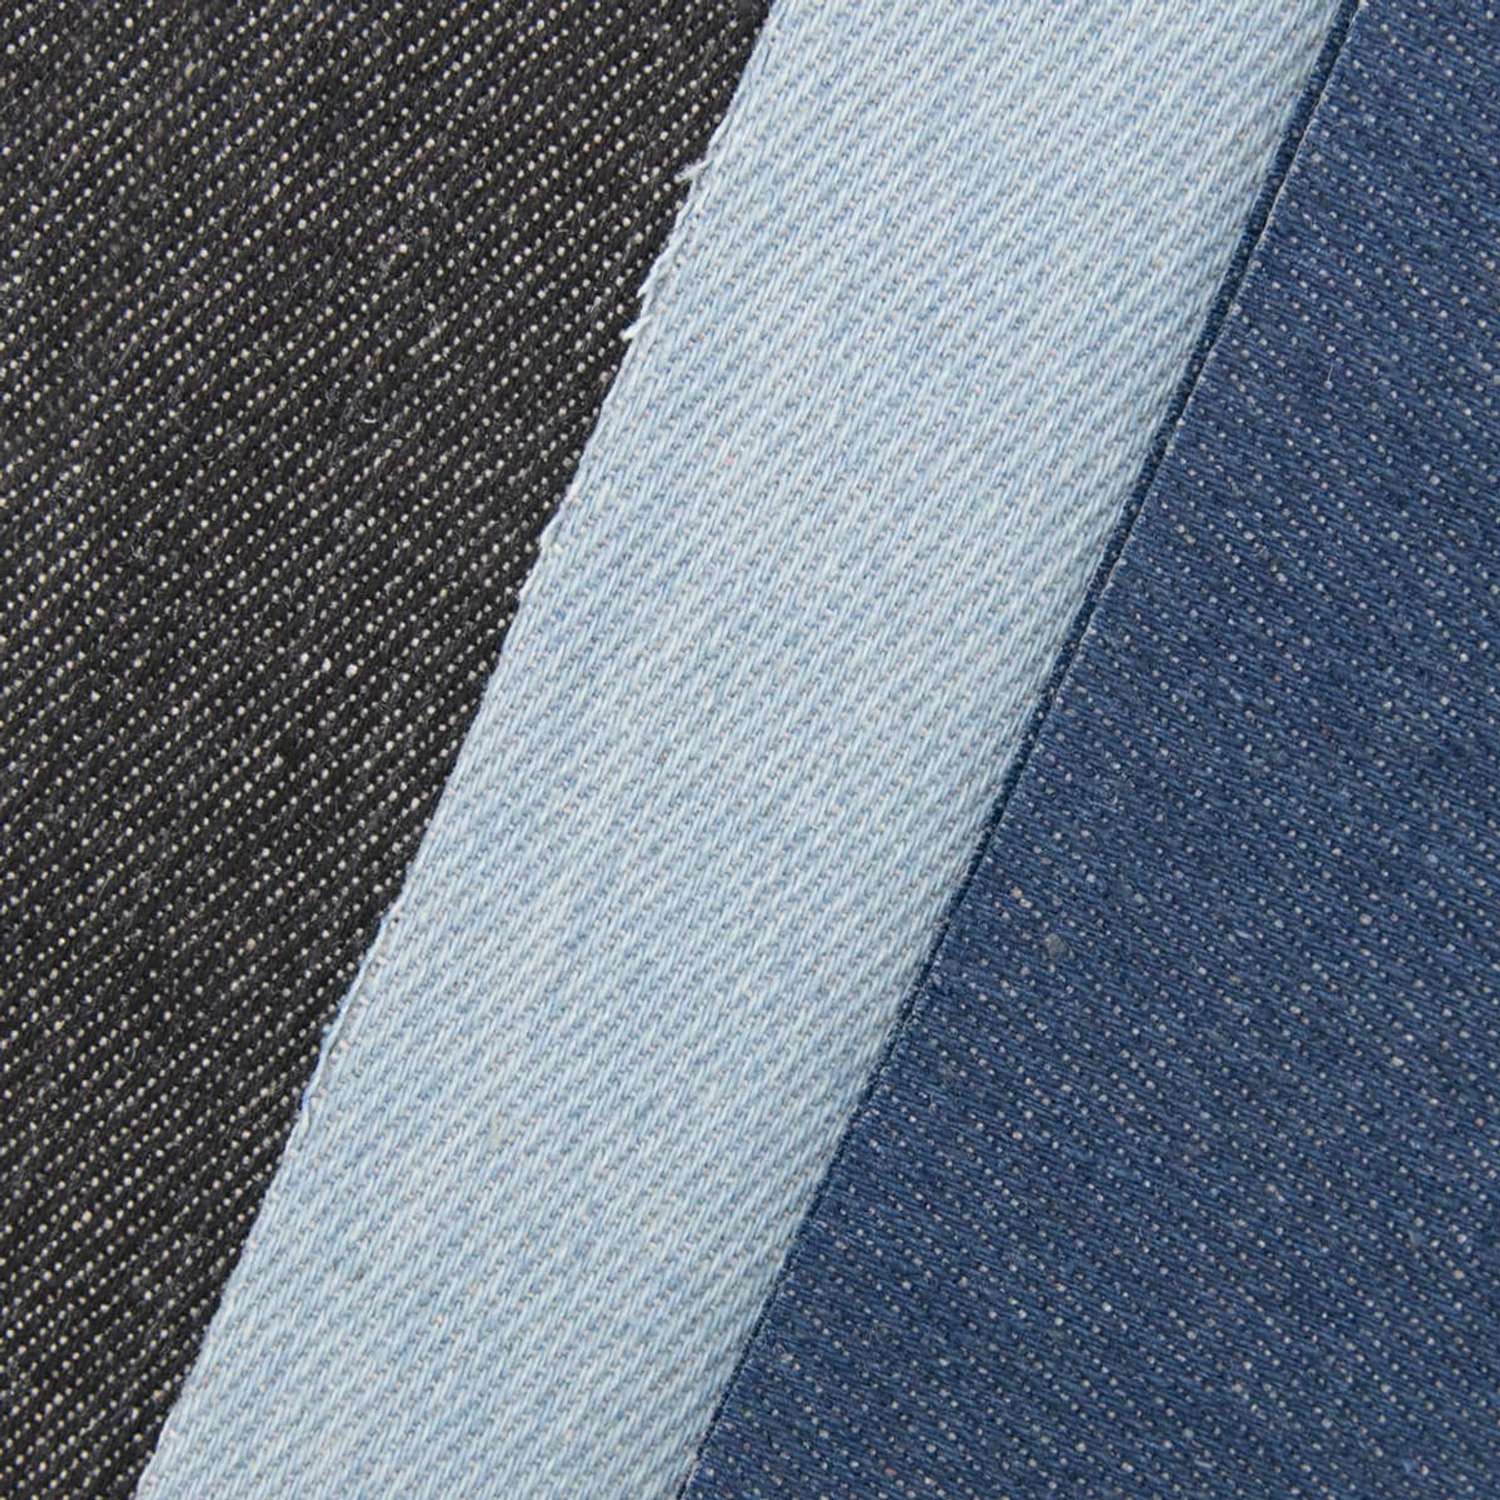 Термозаплатки Hobby and Pro набор из джинсовой ткани для заплаток 2 шт каждого цвета 10х15 см - фото 2